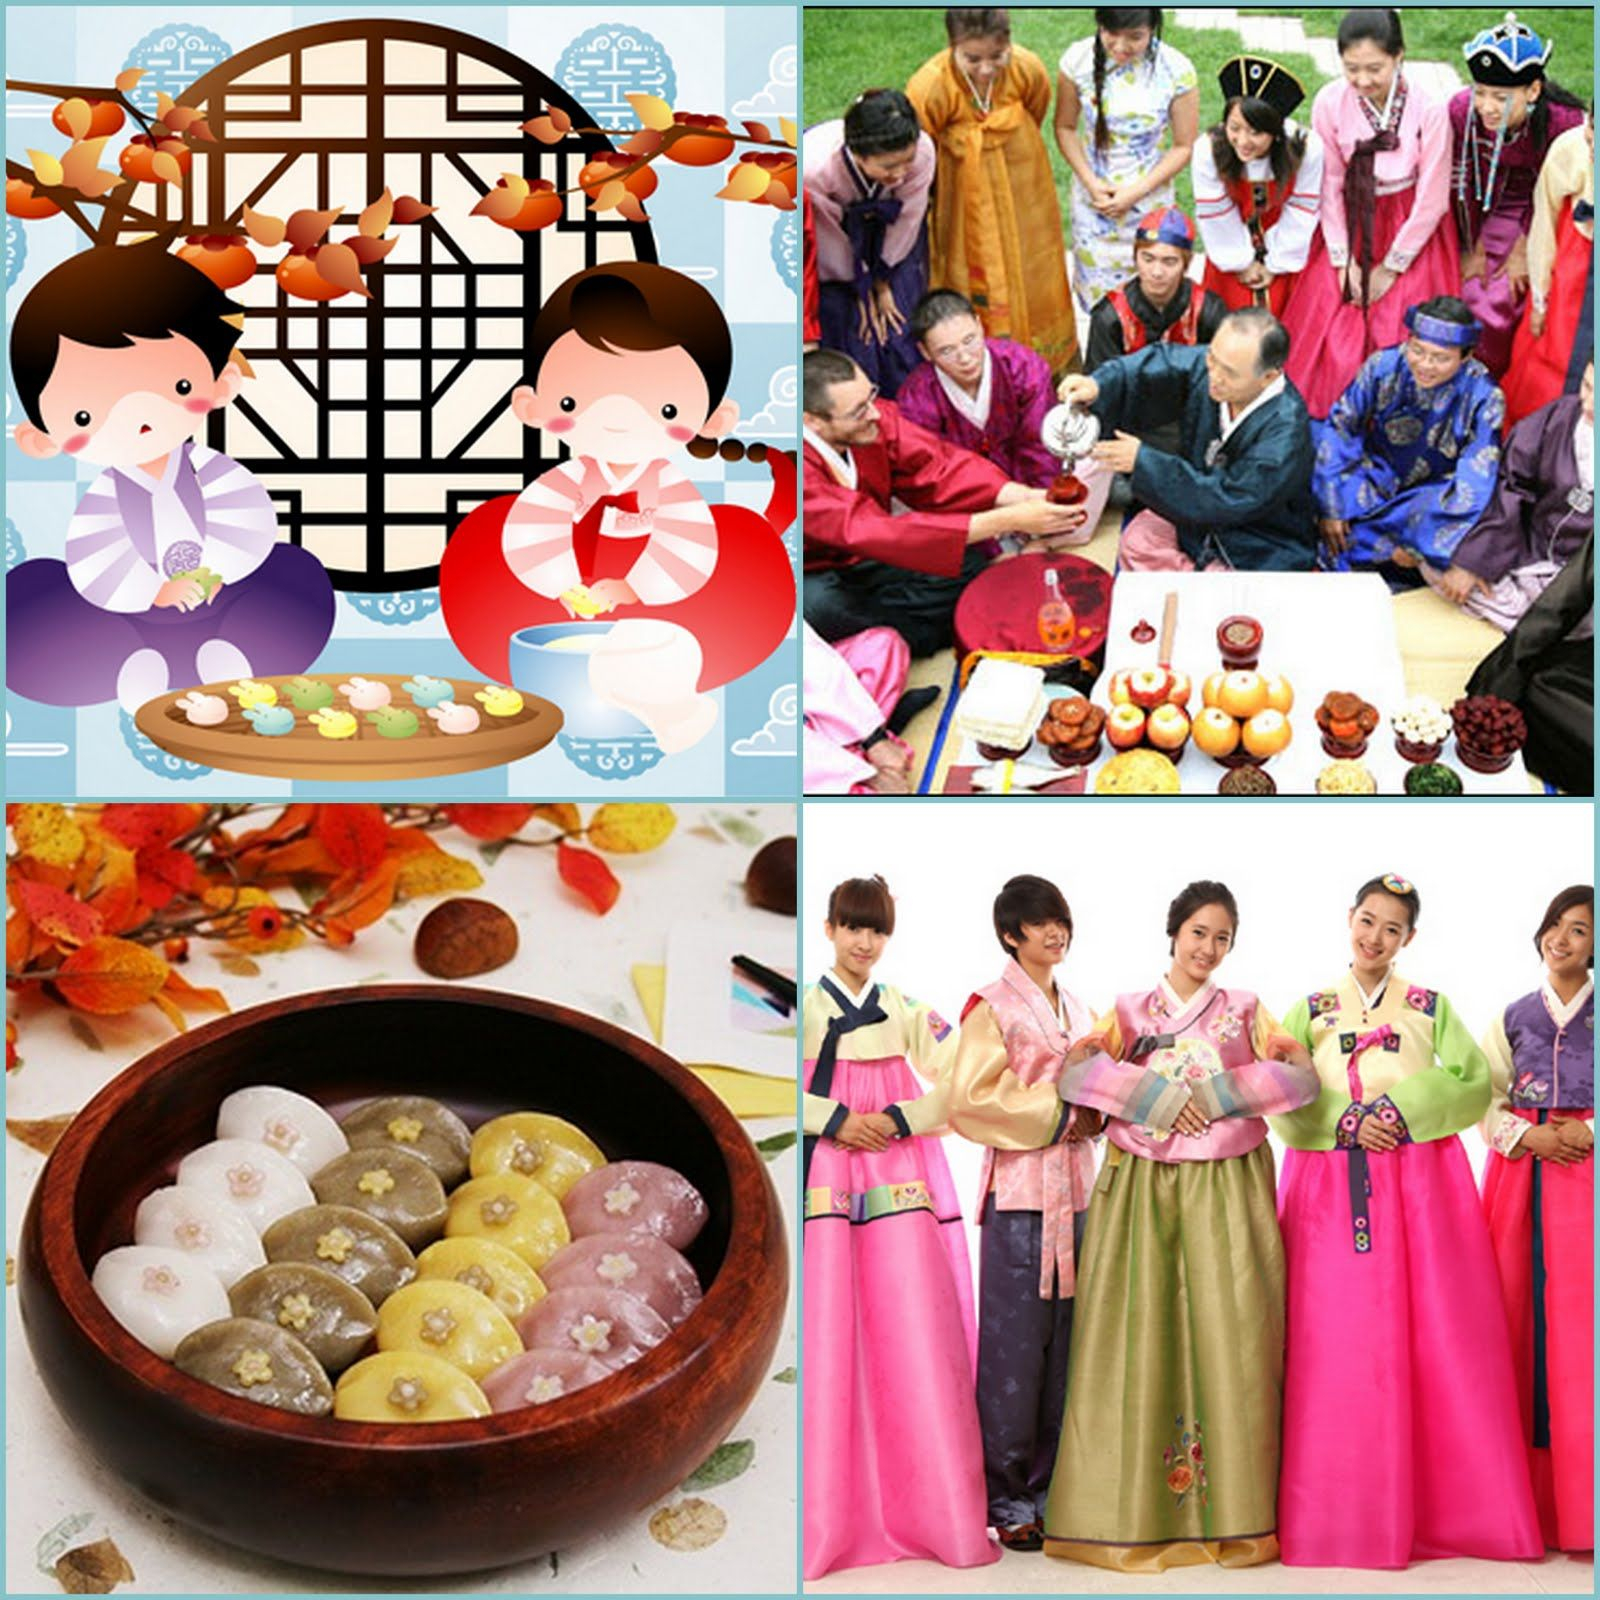 Traditional South Korea Festivals! ~ Lex Paradise